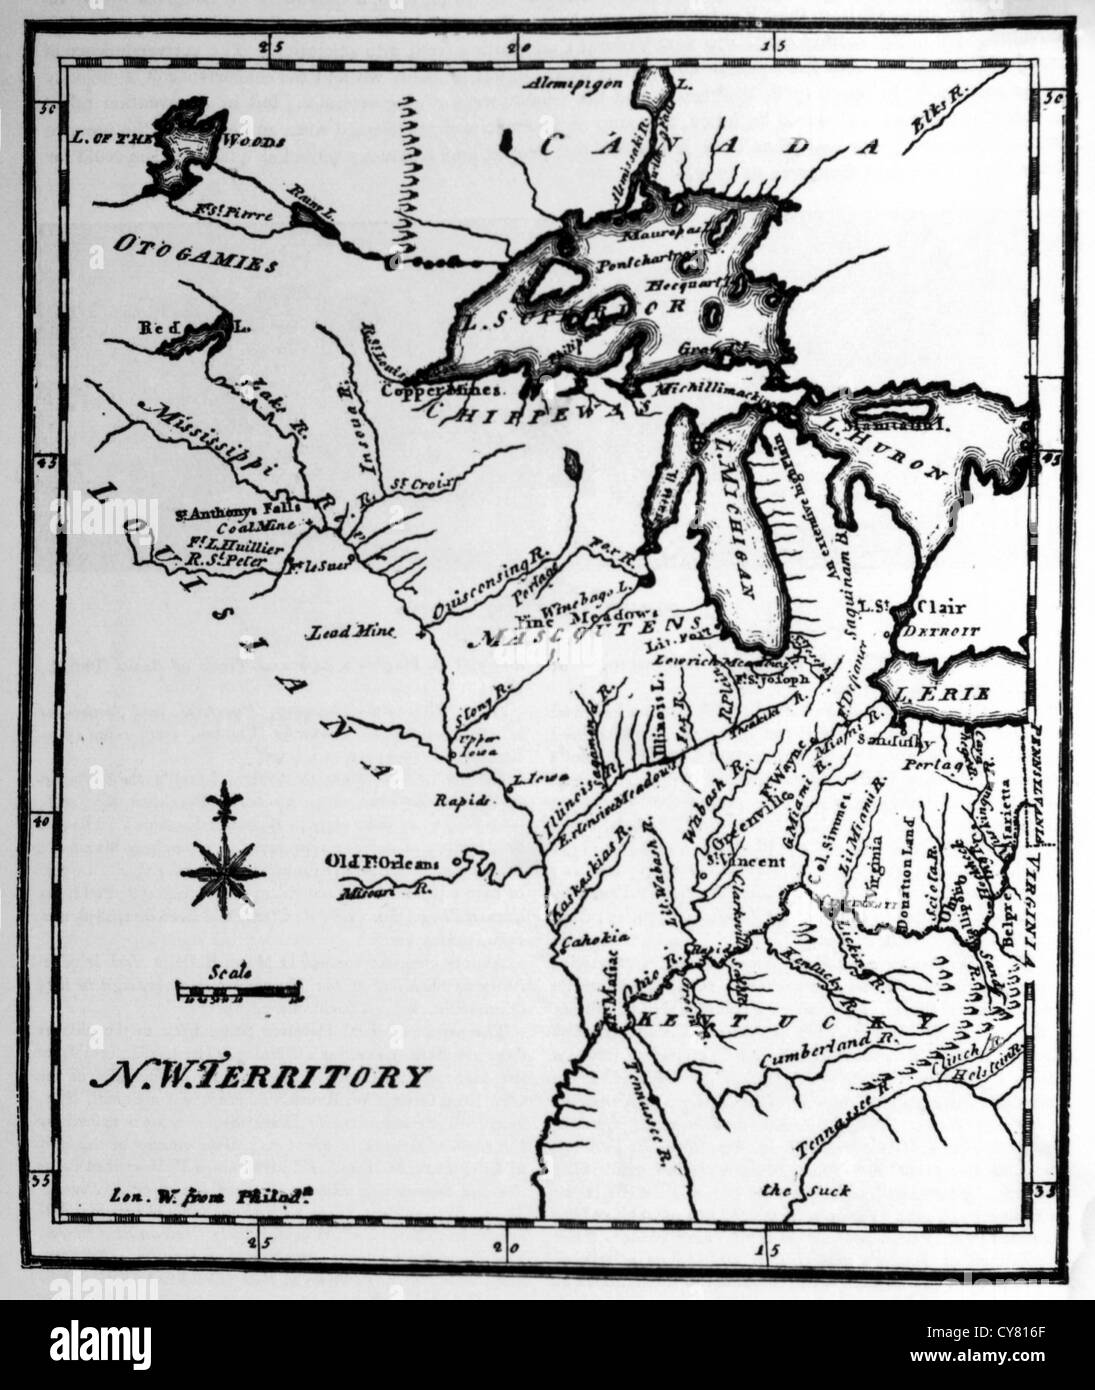 Territori del nord-ovest mappa da Stati Uniti dizionario geografico, Philadelphia, Pennsylvania, USA, incisione, circa 1795 Foto Stock